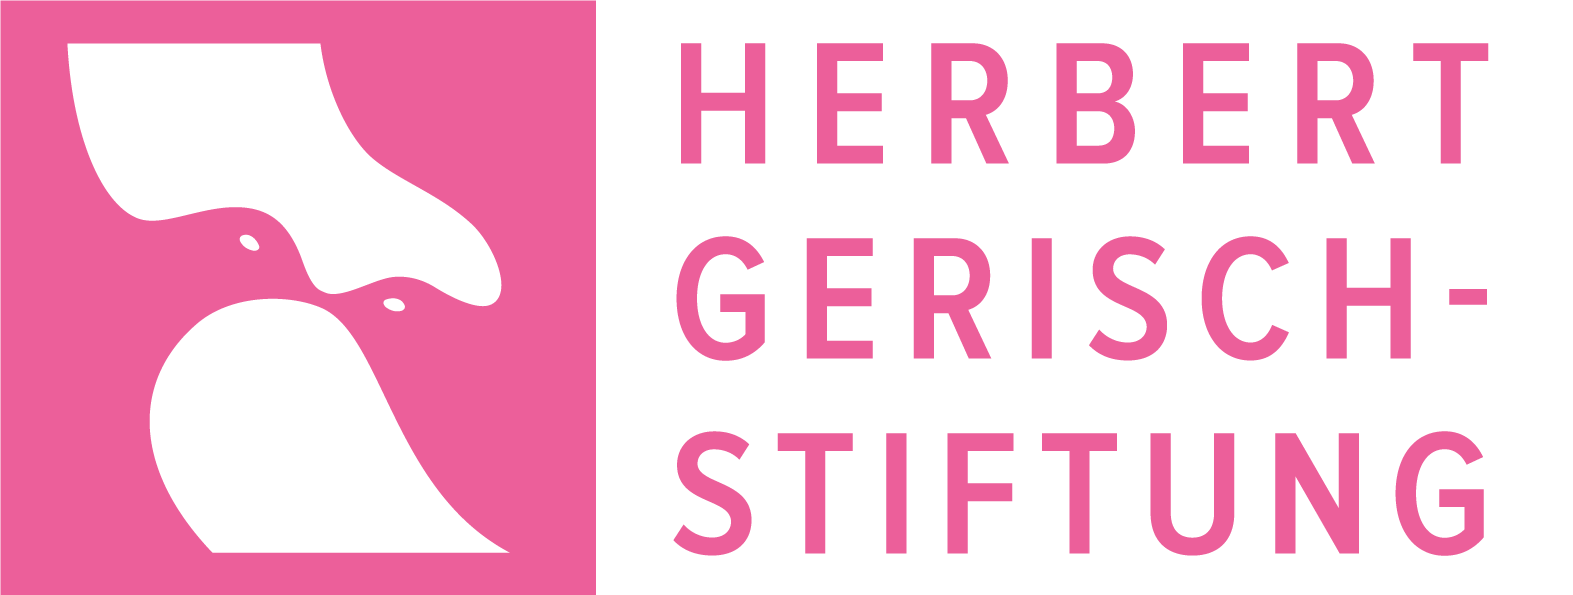 Herbert Gerisch-Stiftung